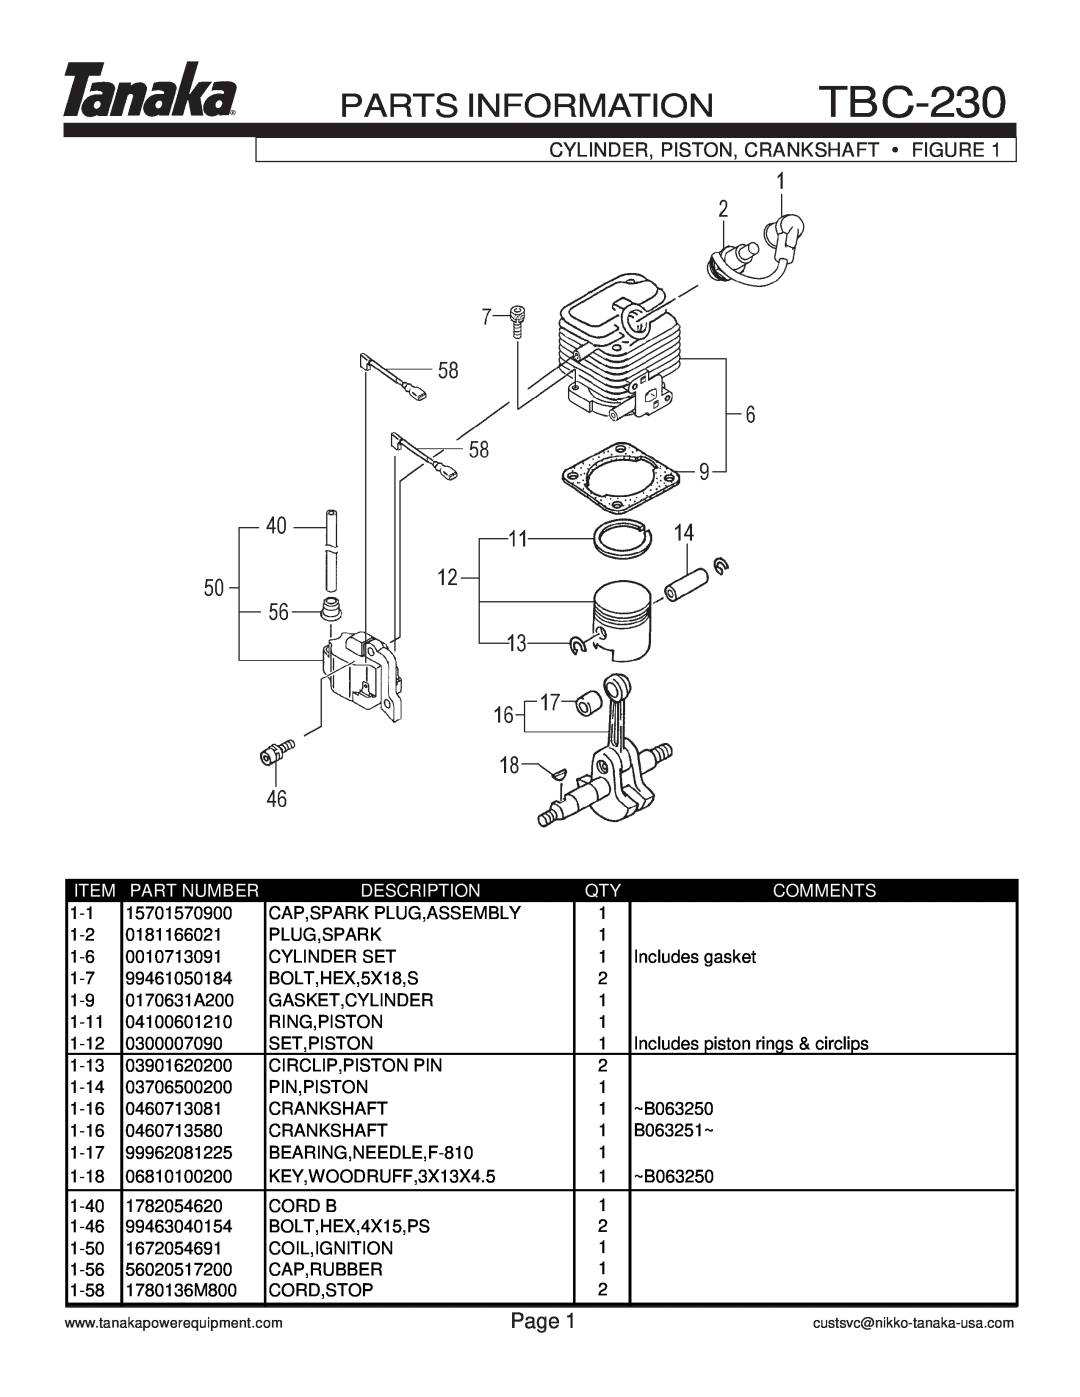 Tanaka TBC-230 manual Parts Information, Page, Cylinder, Piston, Crankshaft Figure, Part Number, Description, Comments 